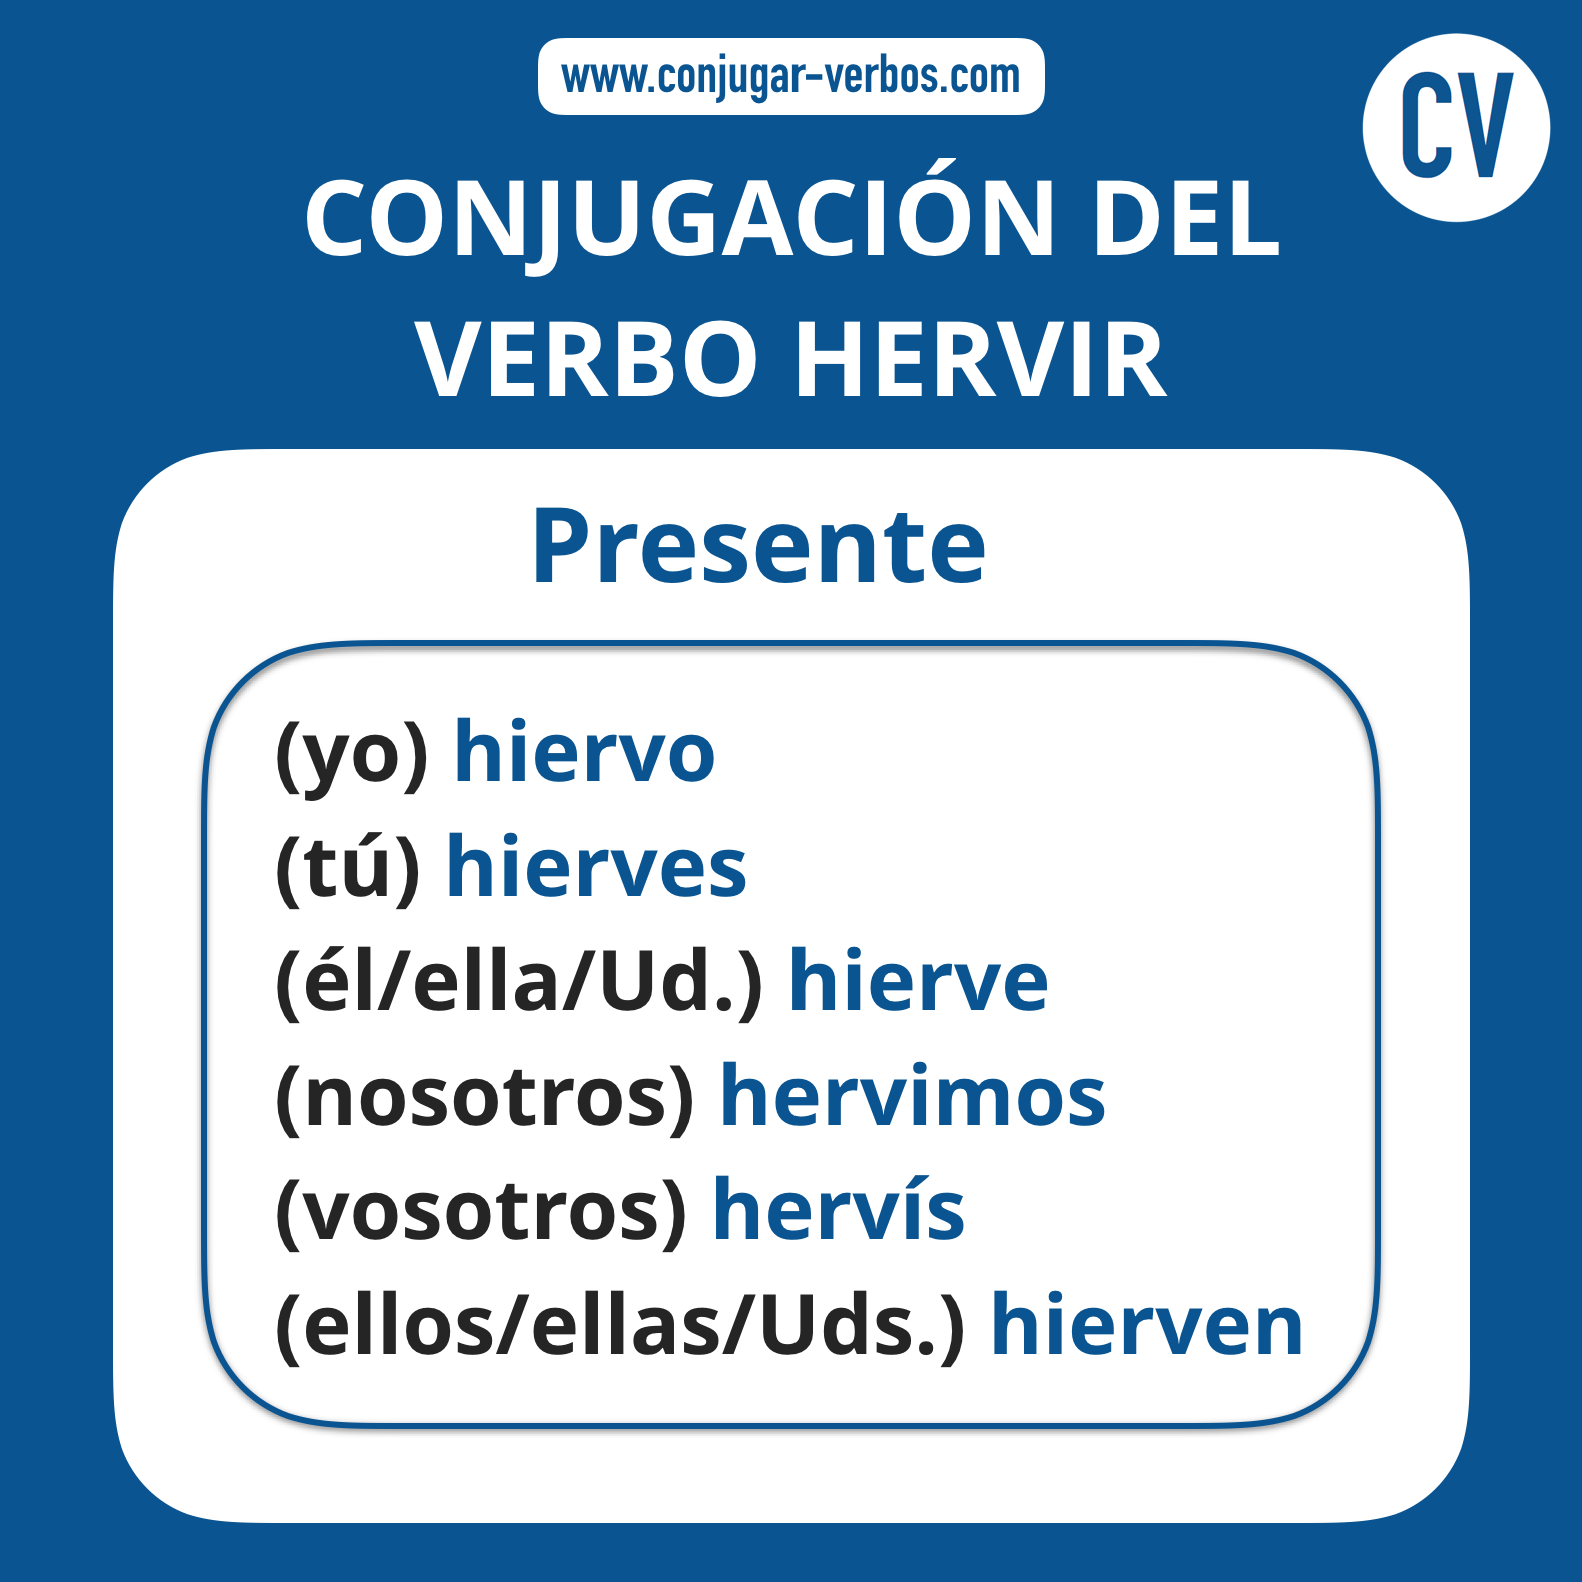 Conjugacion del verbo hervir | Conjugacion hervir